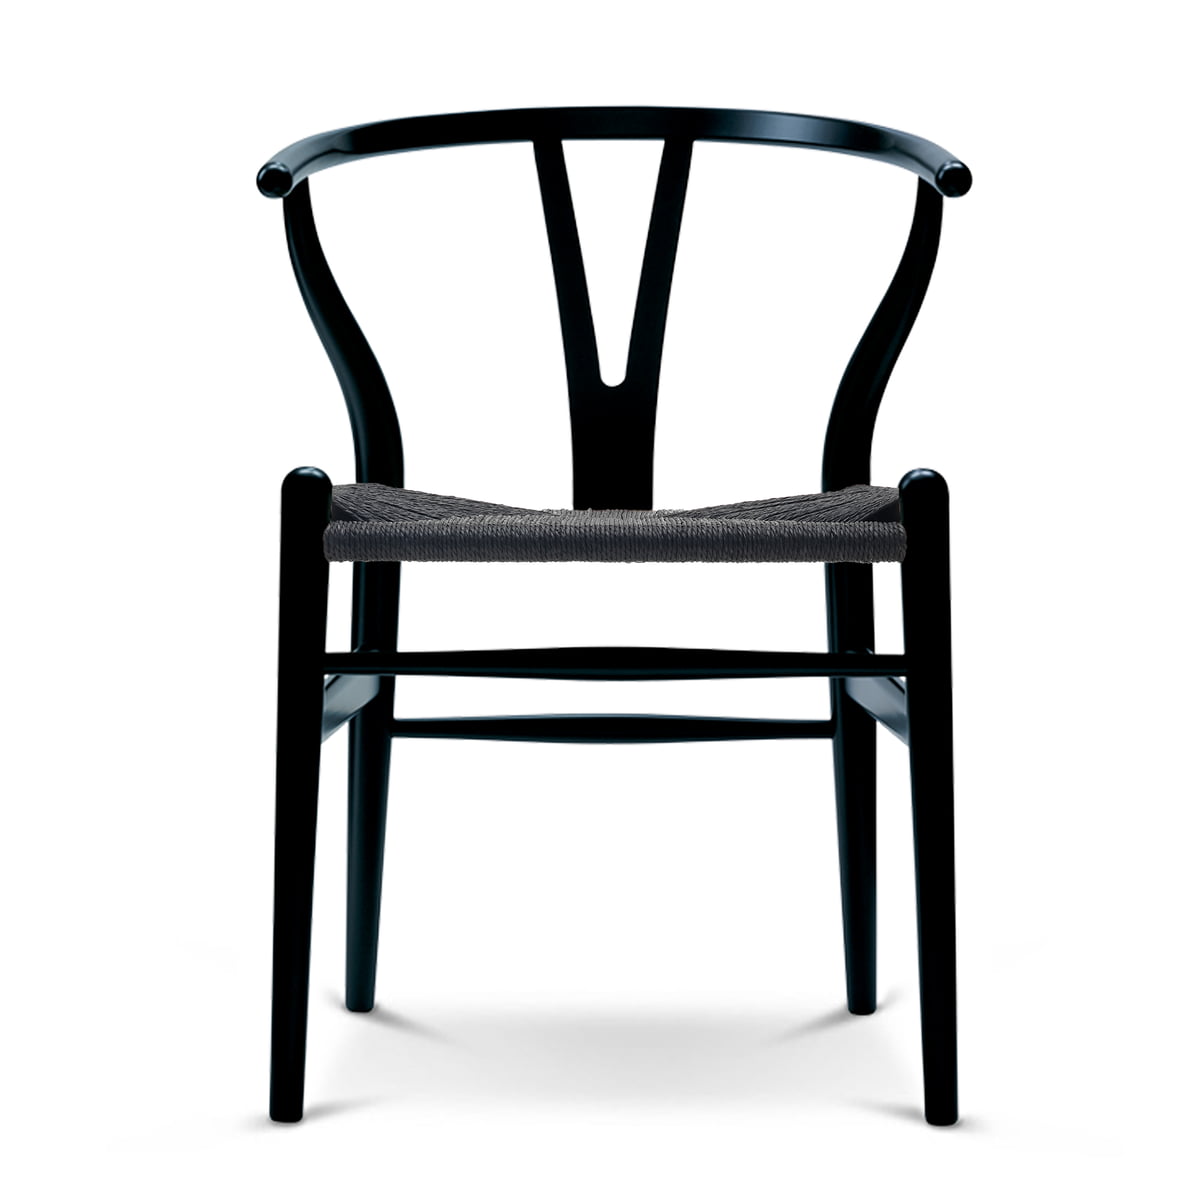 Carl Hansen - CH24 Wishbone Chair, Buche schwarz / schwarzes Geflecht